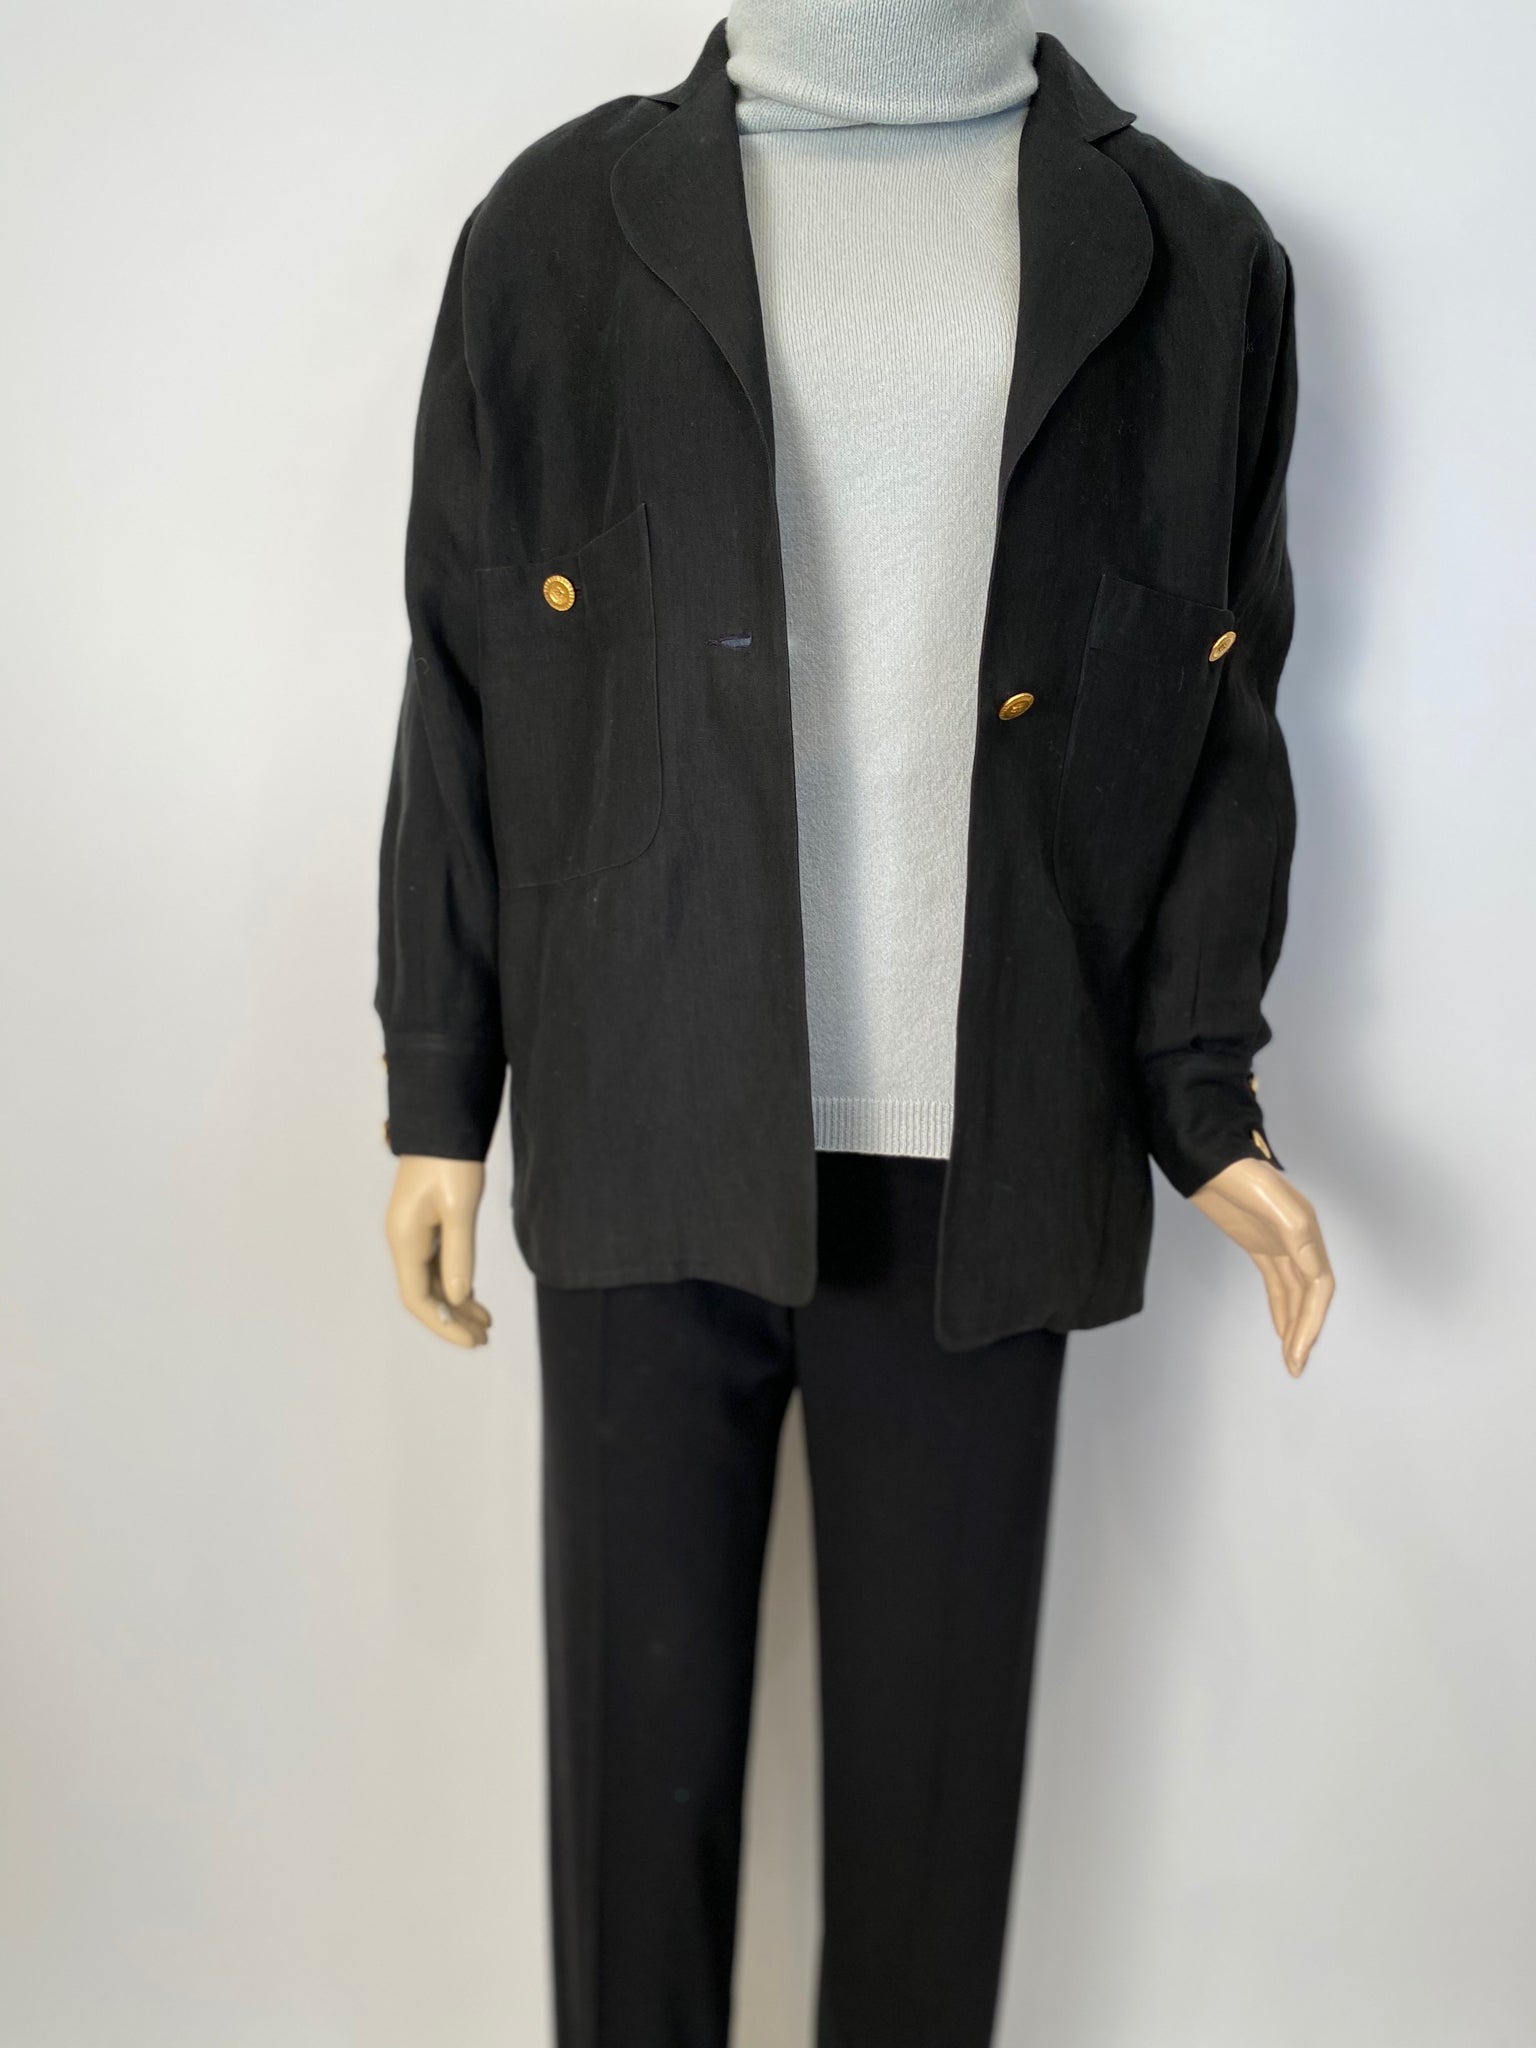 HelensChanel Chanel Vintage 80’s/90’s Black Linen Jacket US 4/6/8/10